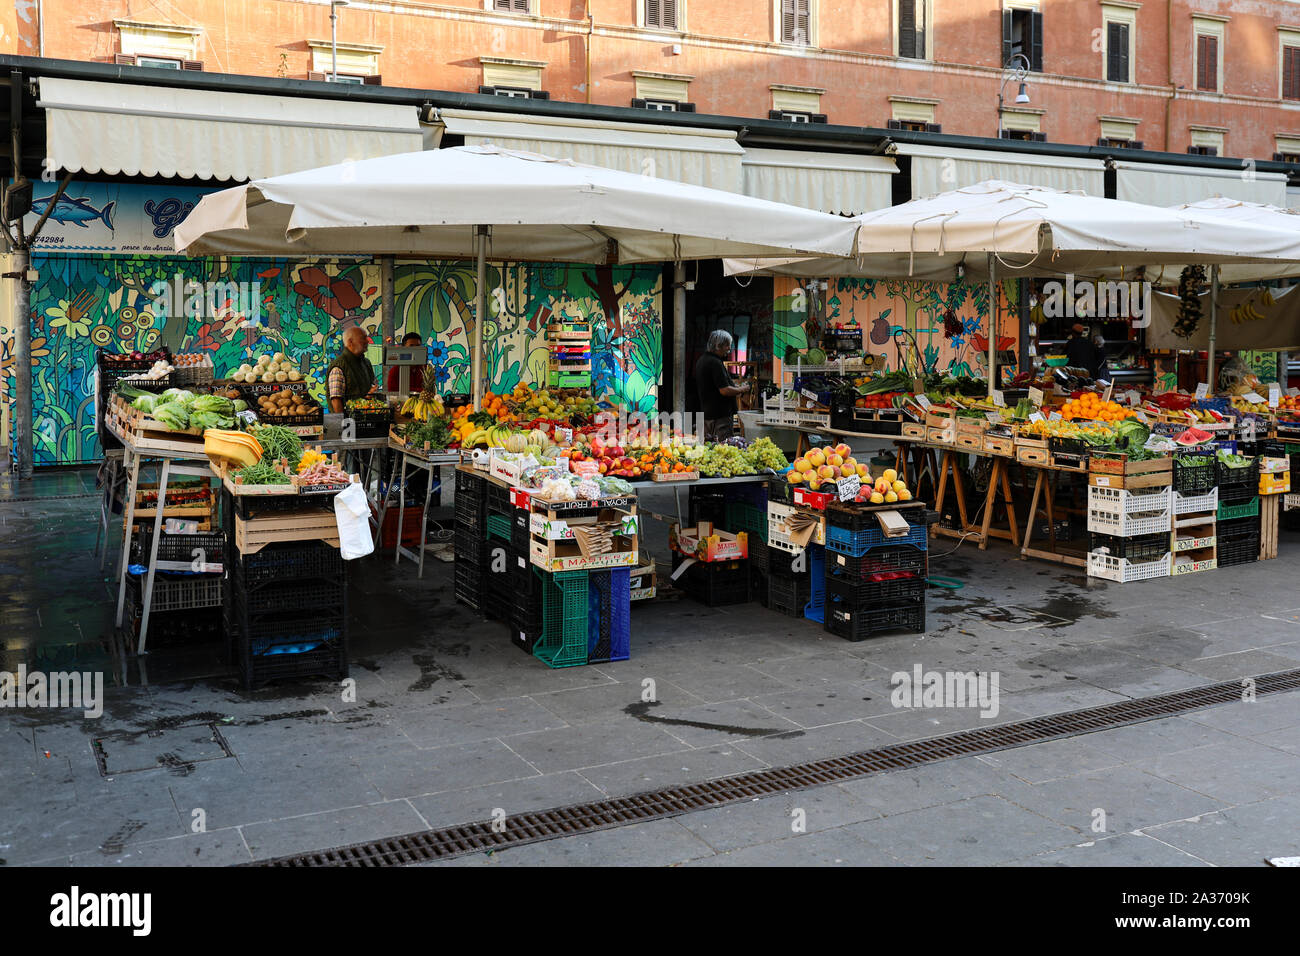 Mercato di San Cosimato - marché de fruits et légumes - dans quartier de Trastevere de Rome, Italie Banque D'Images